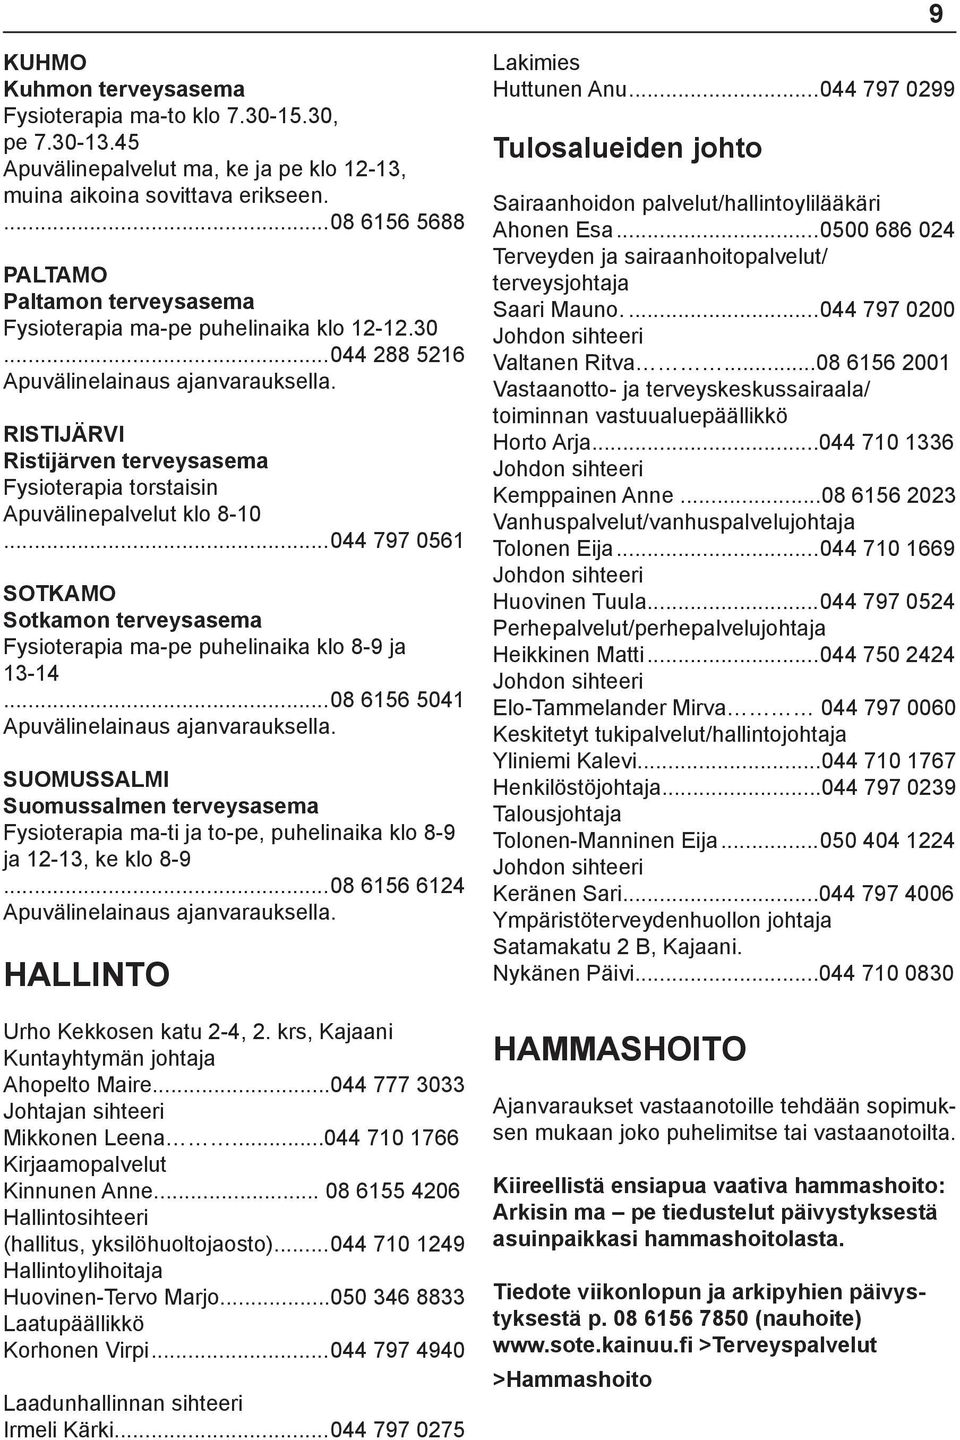 RISTIJÄRVI Ristijärven terveysasema Fysioterapia torstaisin Apuvälinepalvelut klo 8-10...044 797 0561 Sotkamon terveysasema Fysioterapia ma-pe puhelinaika klo 8-9 ja 13-14.